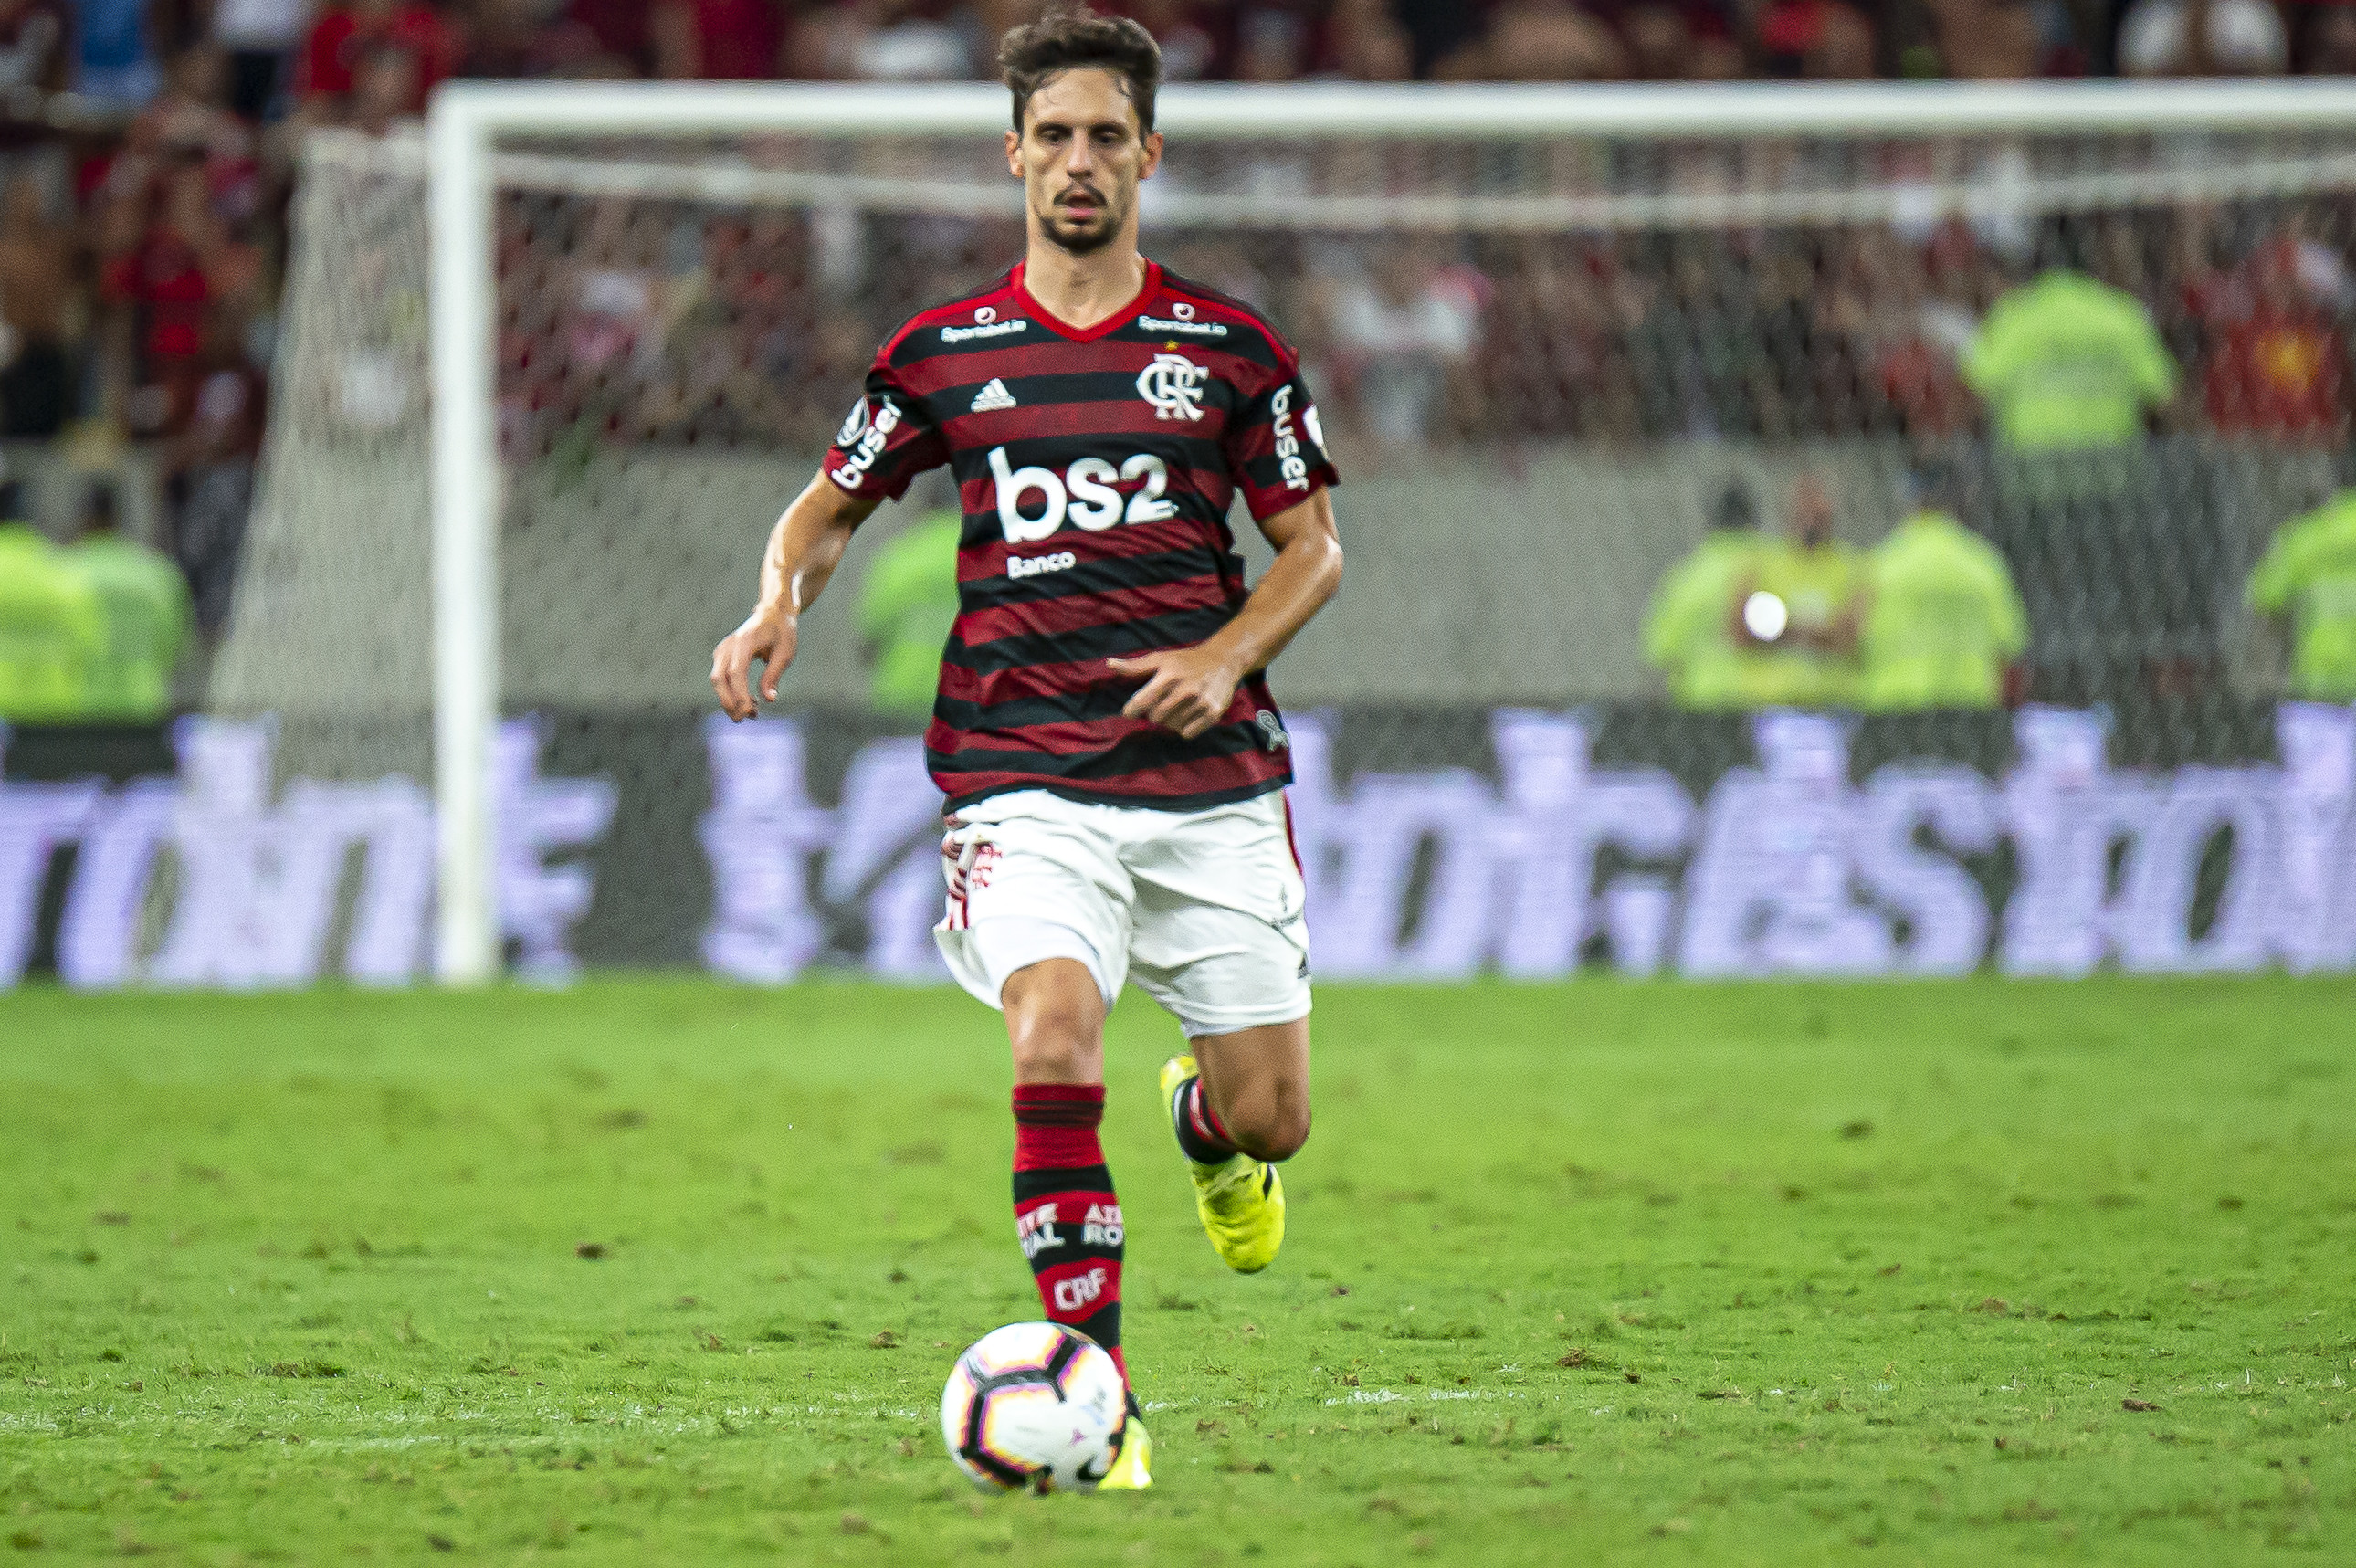 25º lugar: Rodrigo Caio - Zagueiro - Flamengo - 27 anos - Valor de mercado segundo o site Transfermarkt: 6 milhões de euros (aproximadamente R$ 38,62 milhões)